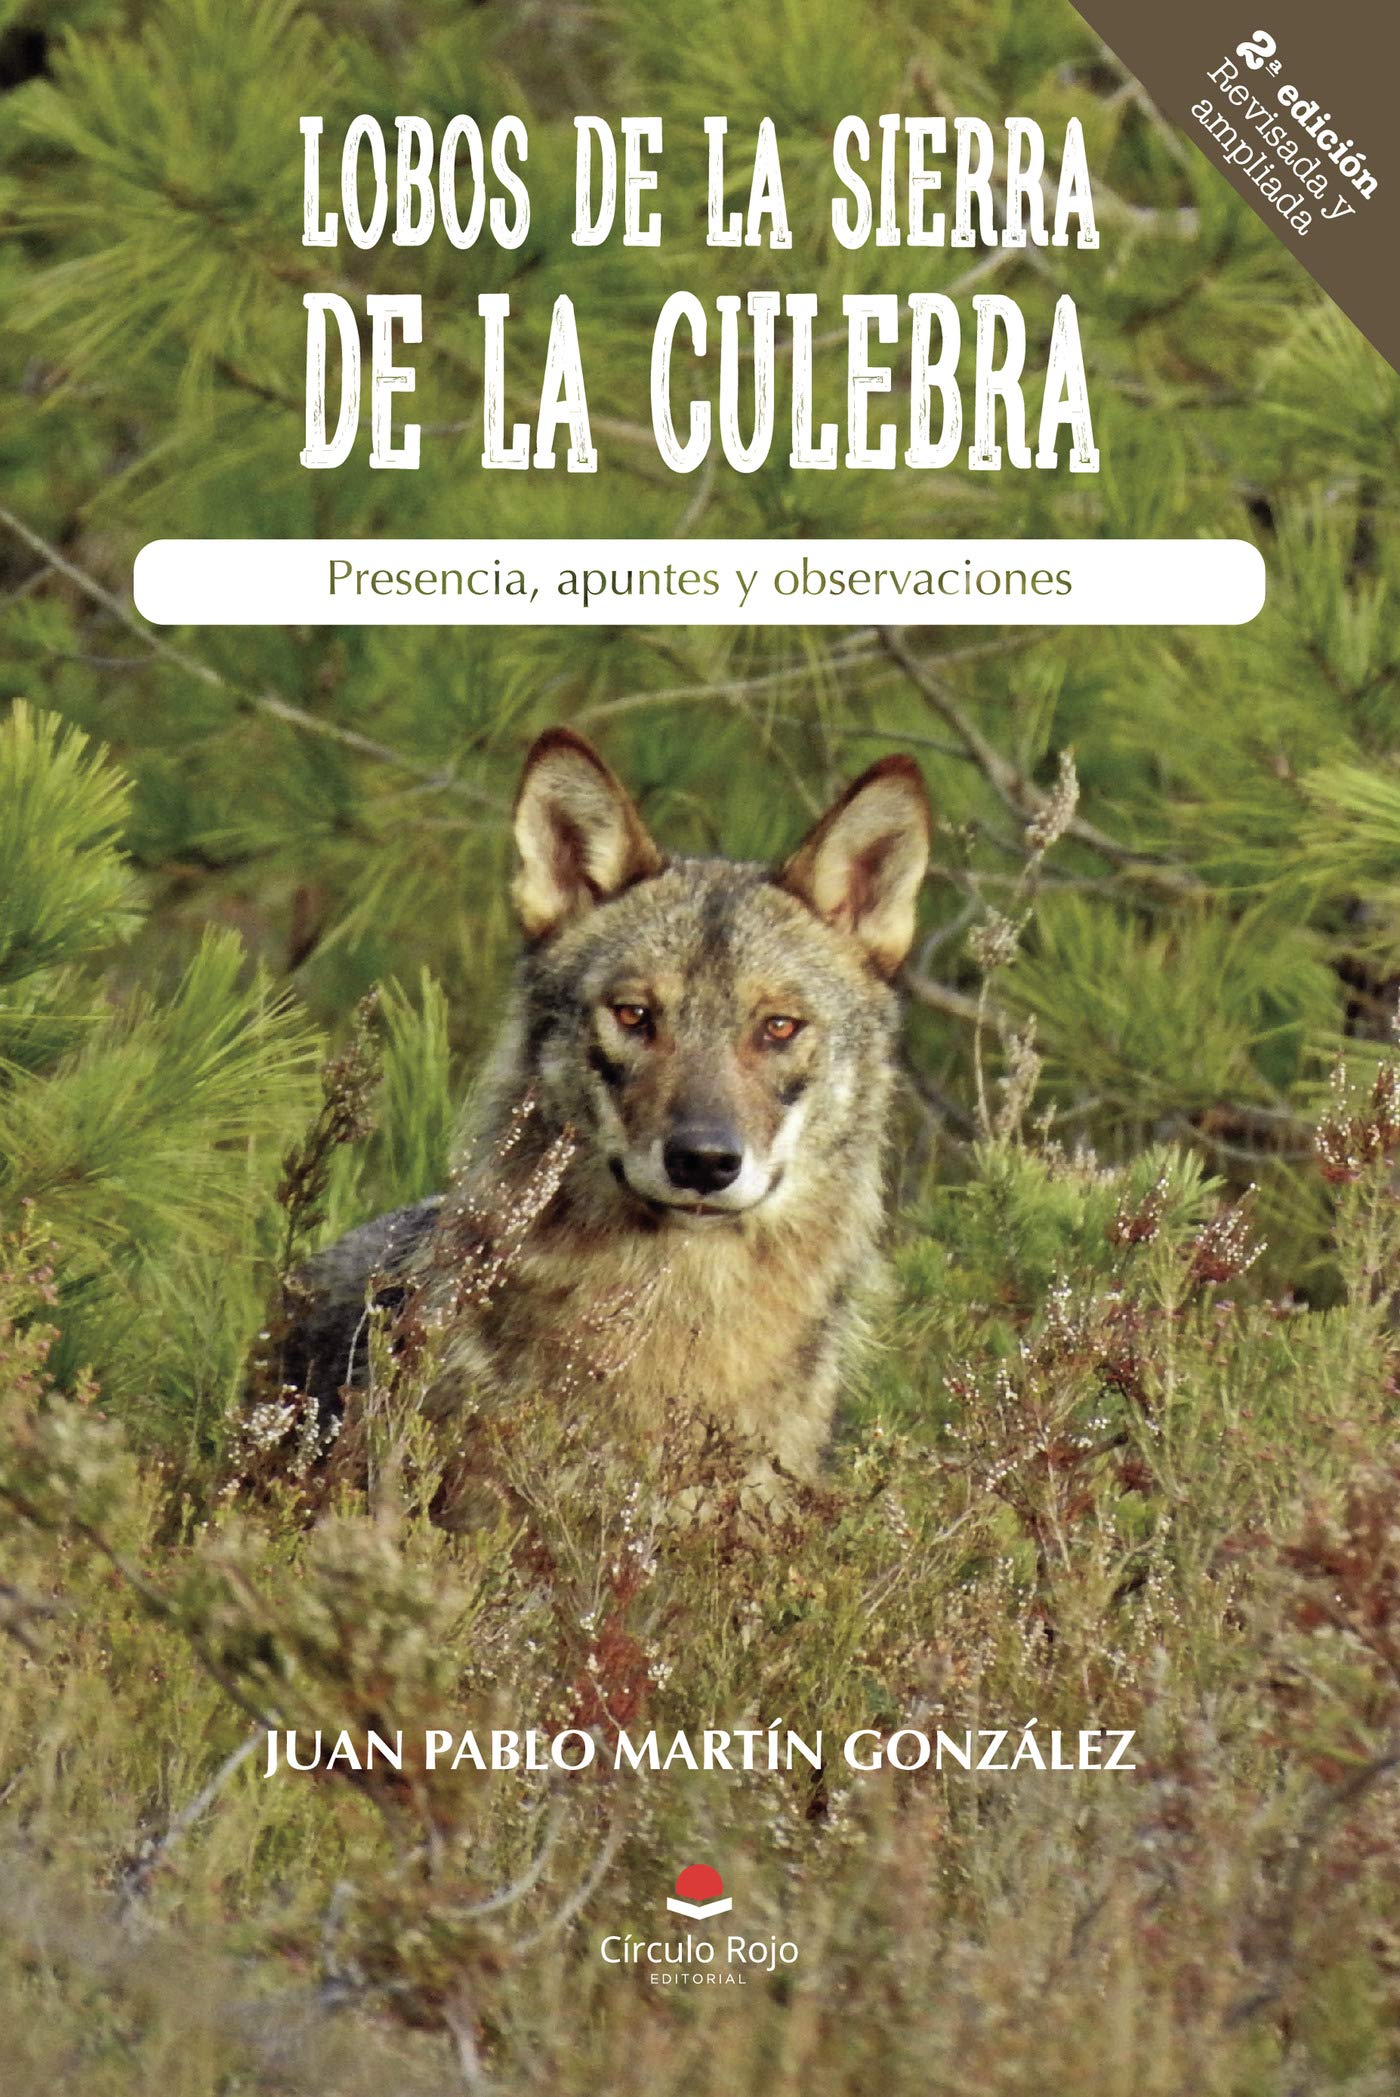 Lobos de la Sierra de la Culebra. Presencia, apuntes y observaciones